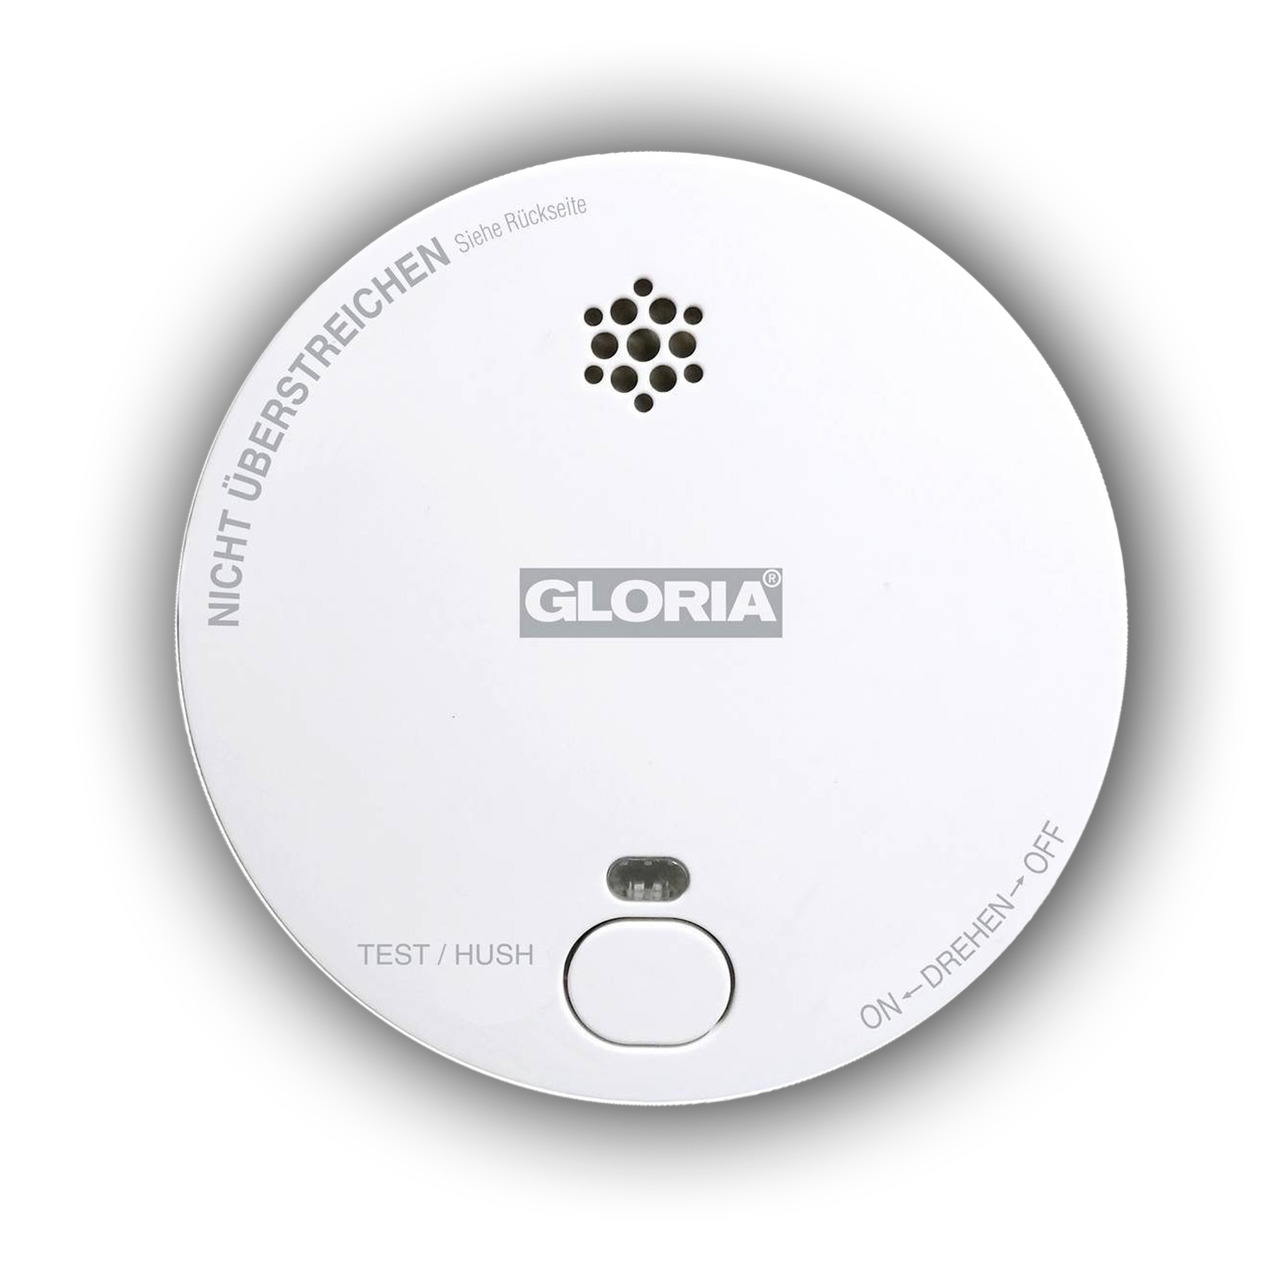 GLORIA Stand-alone Rauchwarnmelder R-1- inkl- 9-V-Blockbatterie- 3 Jahre Herstellergarantie